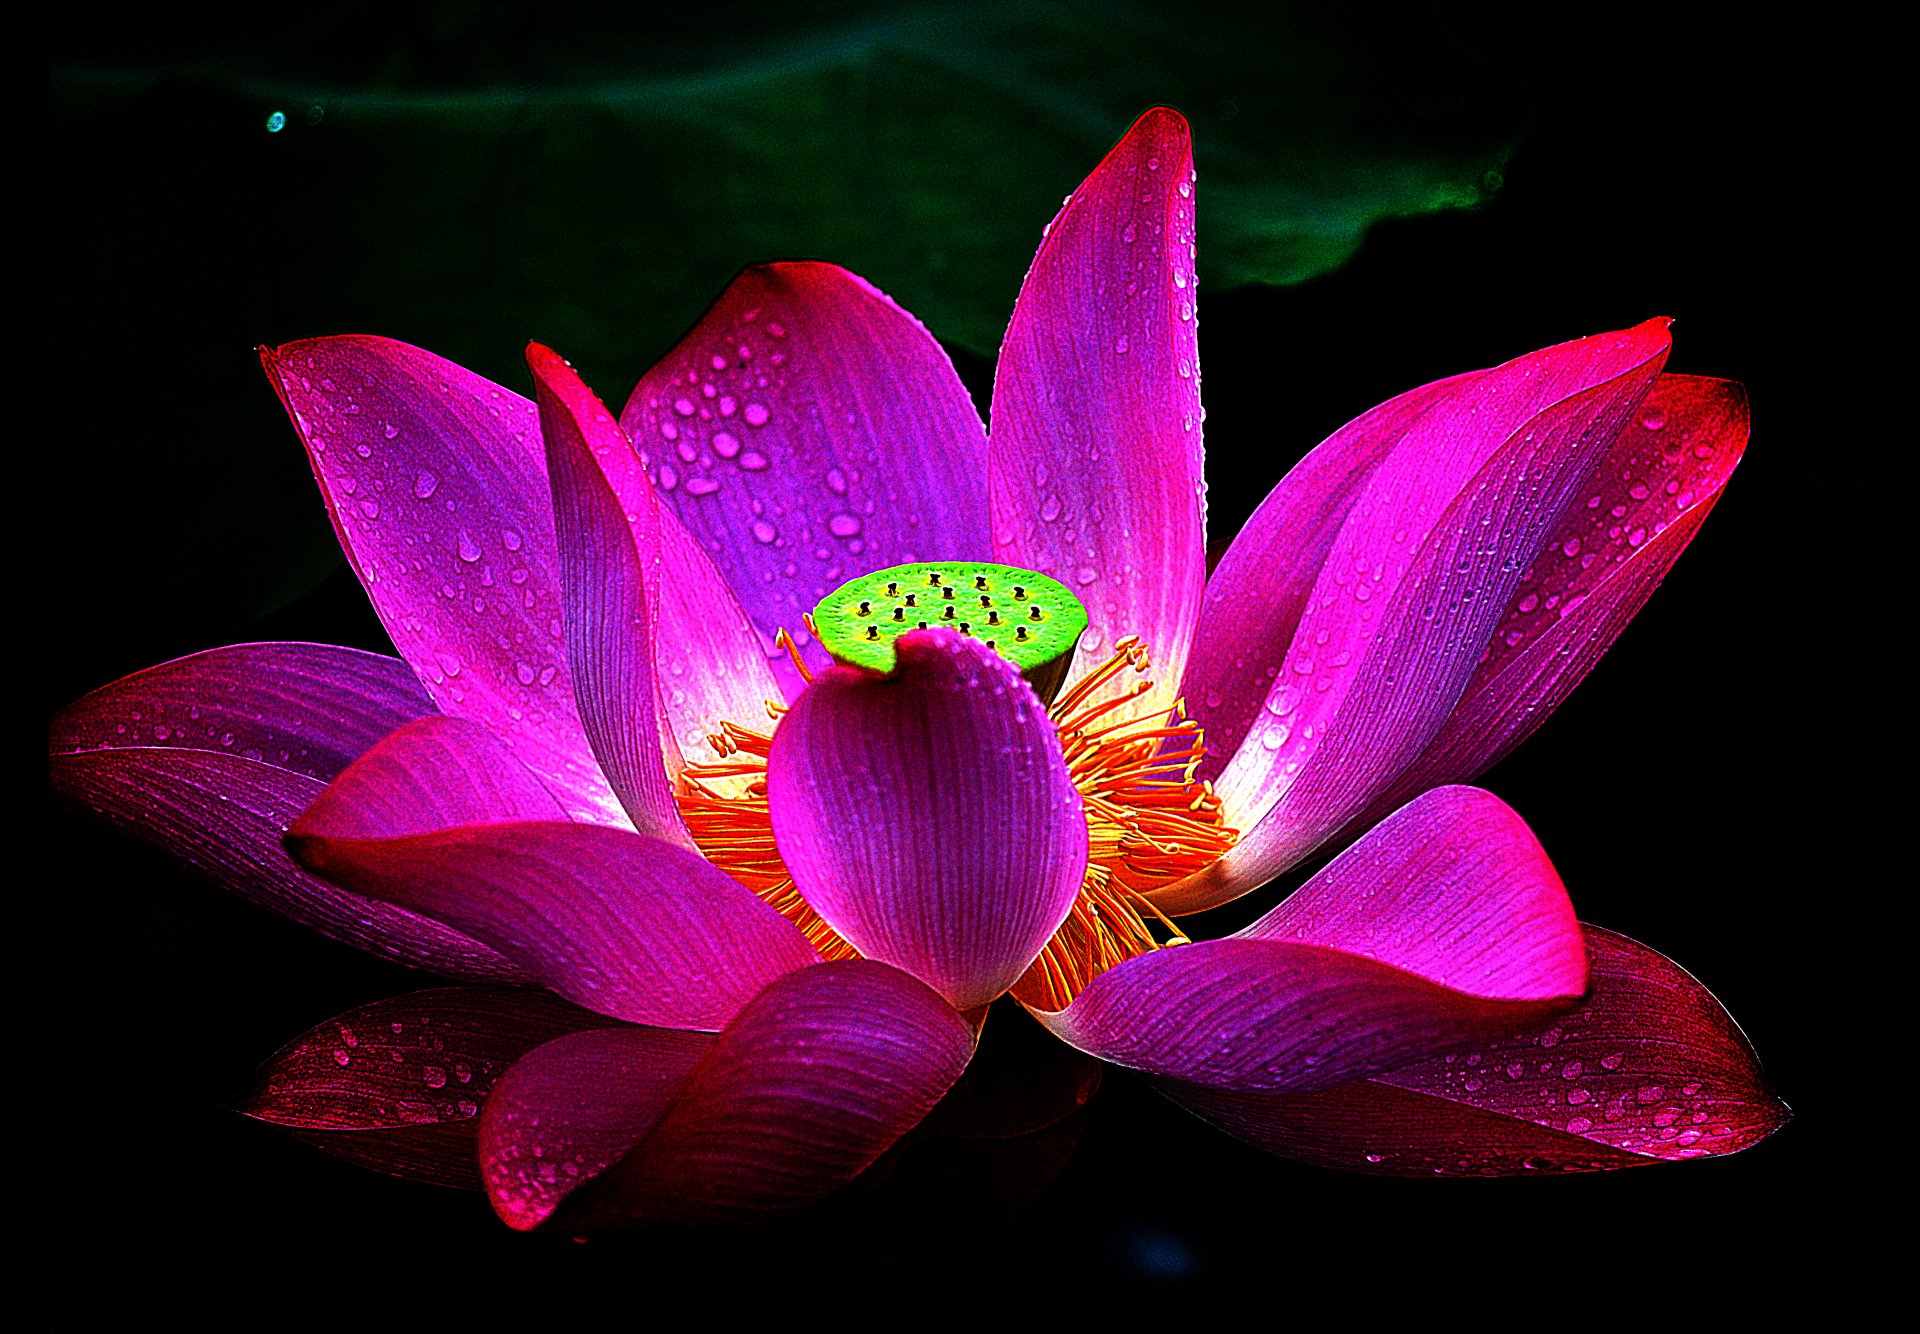 Hình nền Lotus 4k Ultra HD là một tác phẩm nghệ thuật sống động giúp bạn thư giãn và tận hưởng sự vẻ đẹp hoàn hảo của hoa sen. Đừng bỏ lỡ cơ hội để chiêm ngưỡng tuyệt phẩm này.